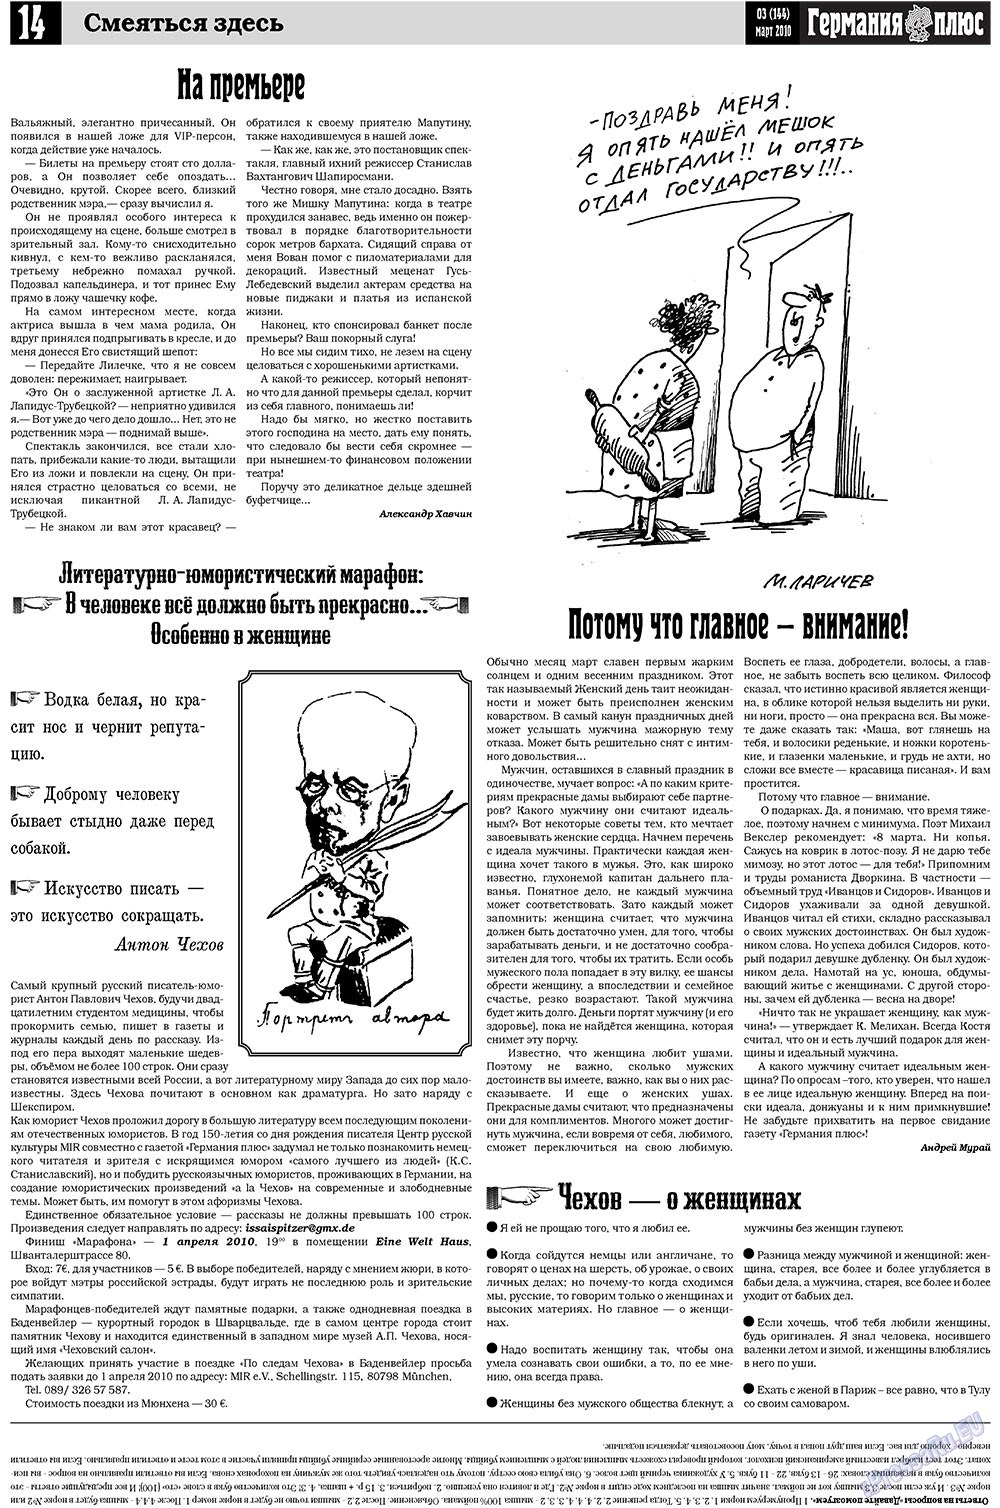 Германия плюс, газета. 2010 №3 стр.14